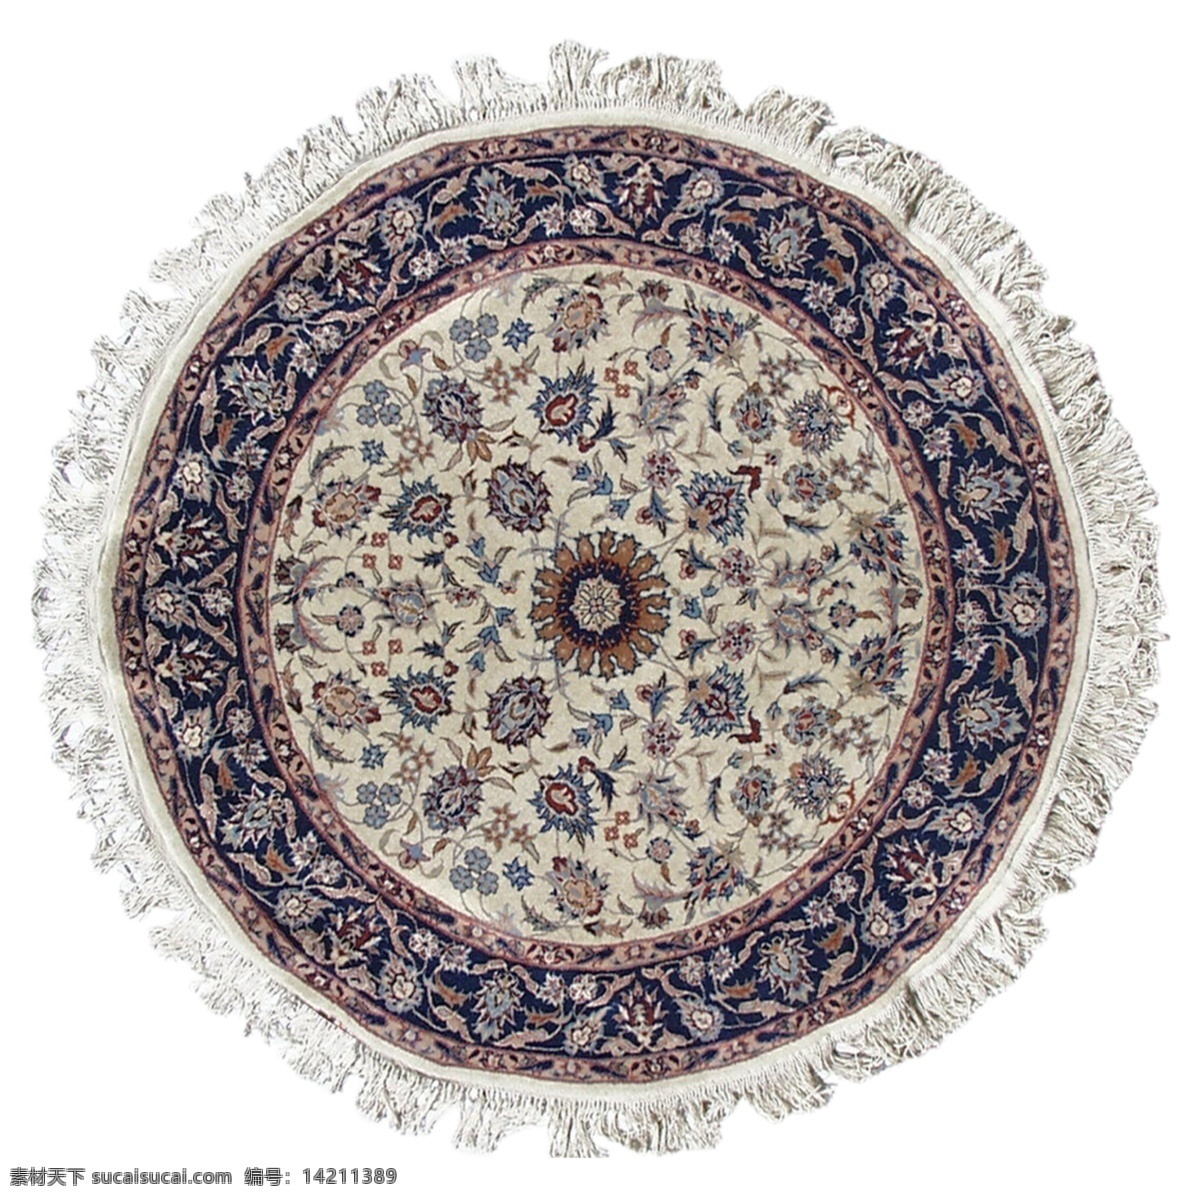 be 花毯 织物 材质贴图 地毯 织物素材 园林 建筑装饰 设计素材 3d模型素材 室内场景模型